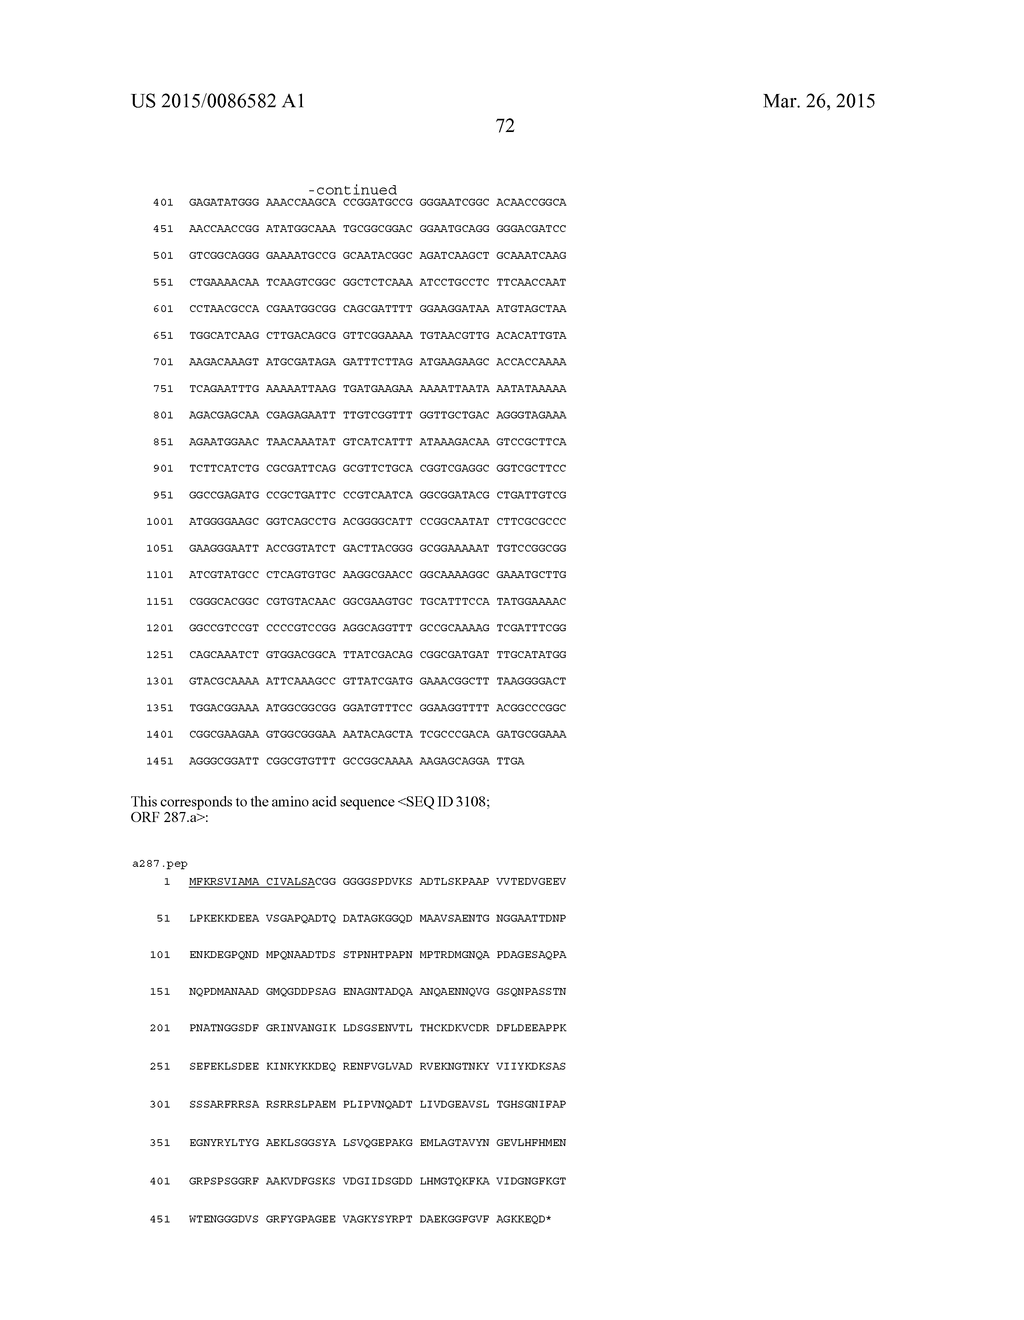 NEISSERIA MENINGITIDIS ANTIGENS AND COMPOSITIONS - diagram, schematic, and image 104